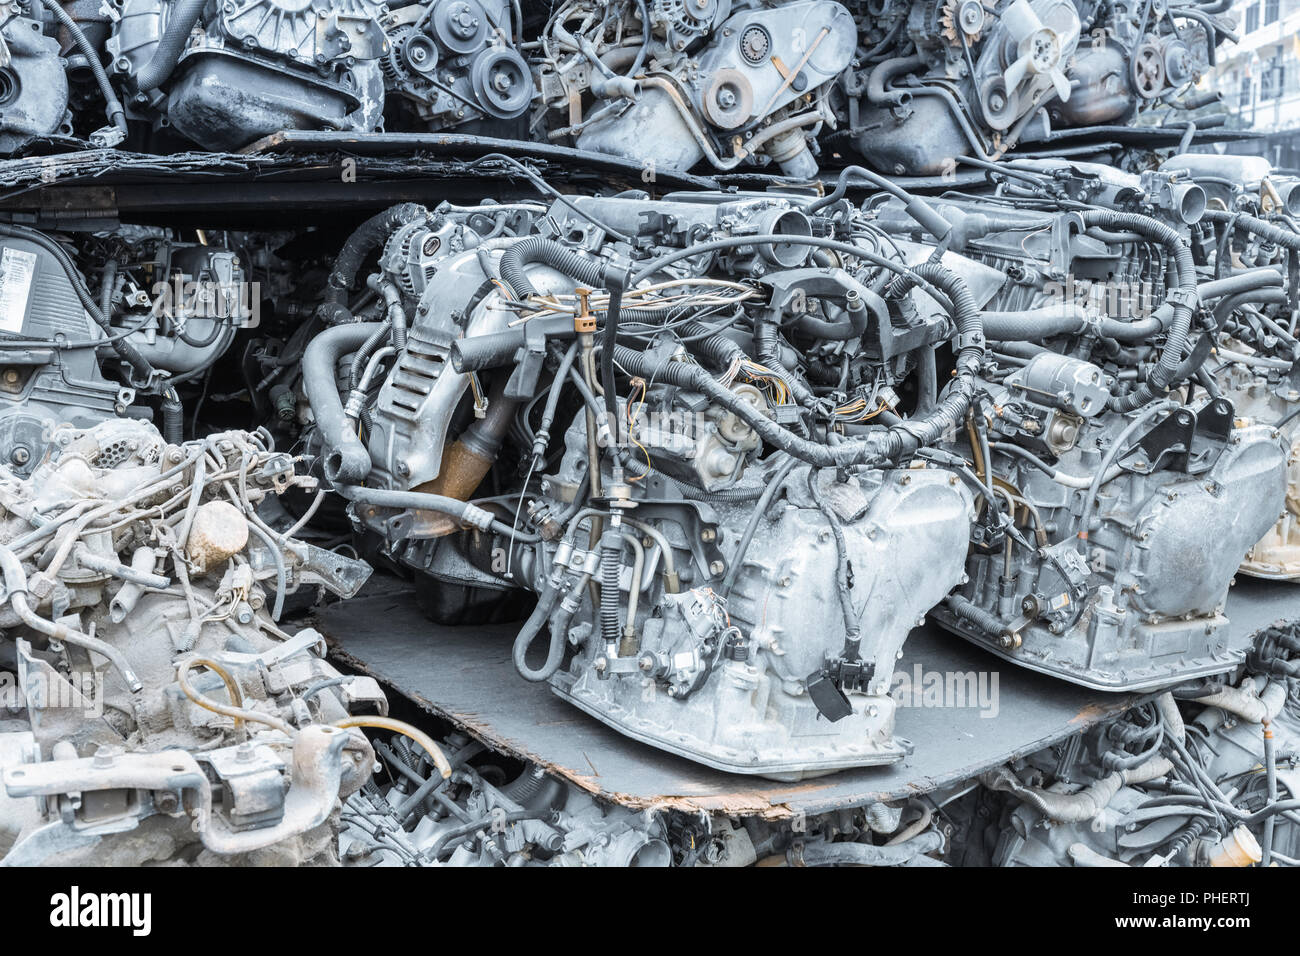 recycling car engines closeup Stock Photo